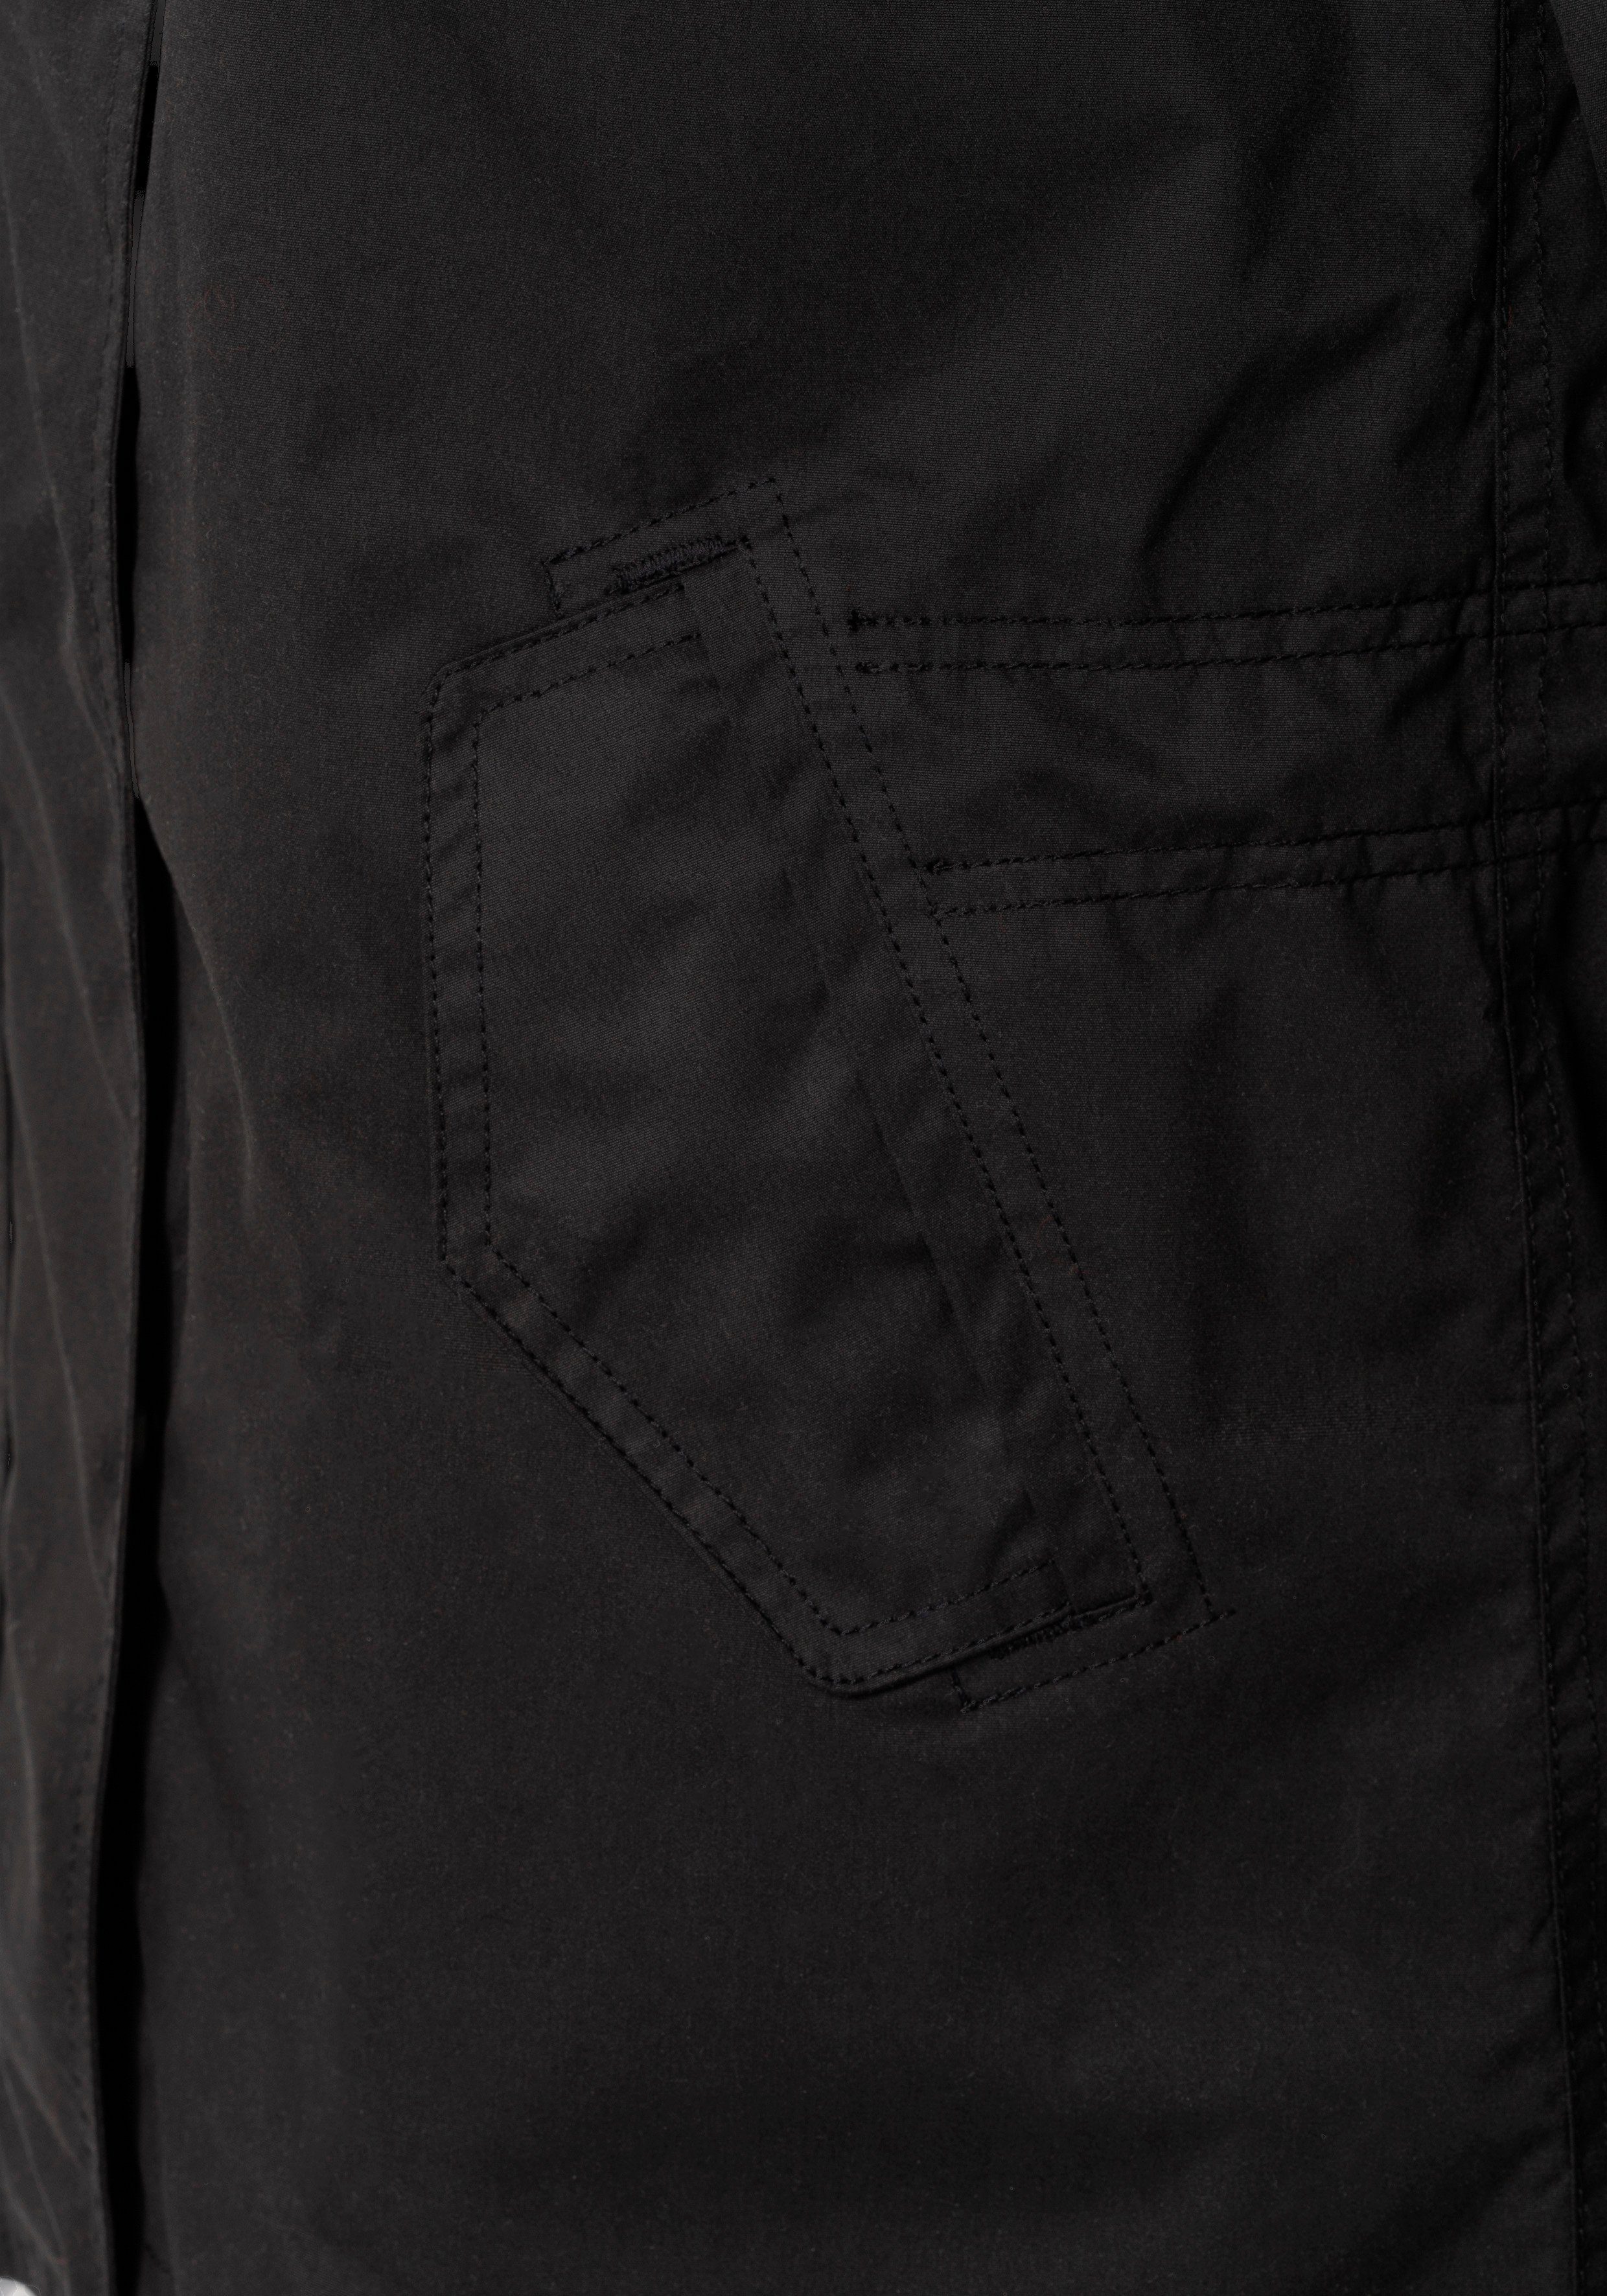 LENCA stylische Ragwear black 1010 fabric Waterproof Übergangsjacke Funktionsjacke